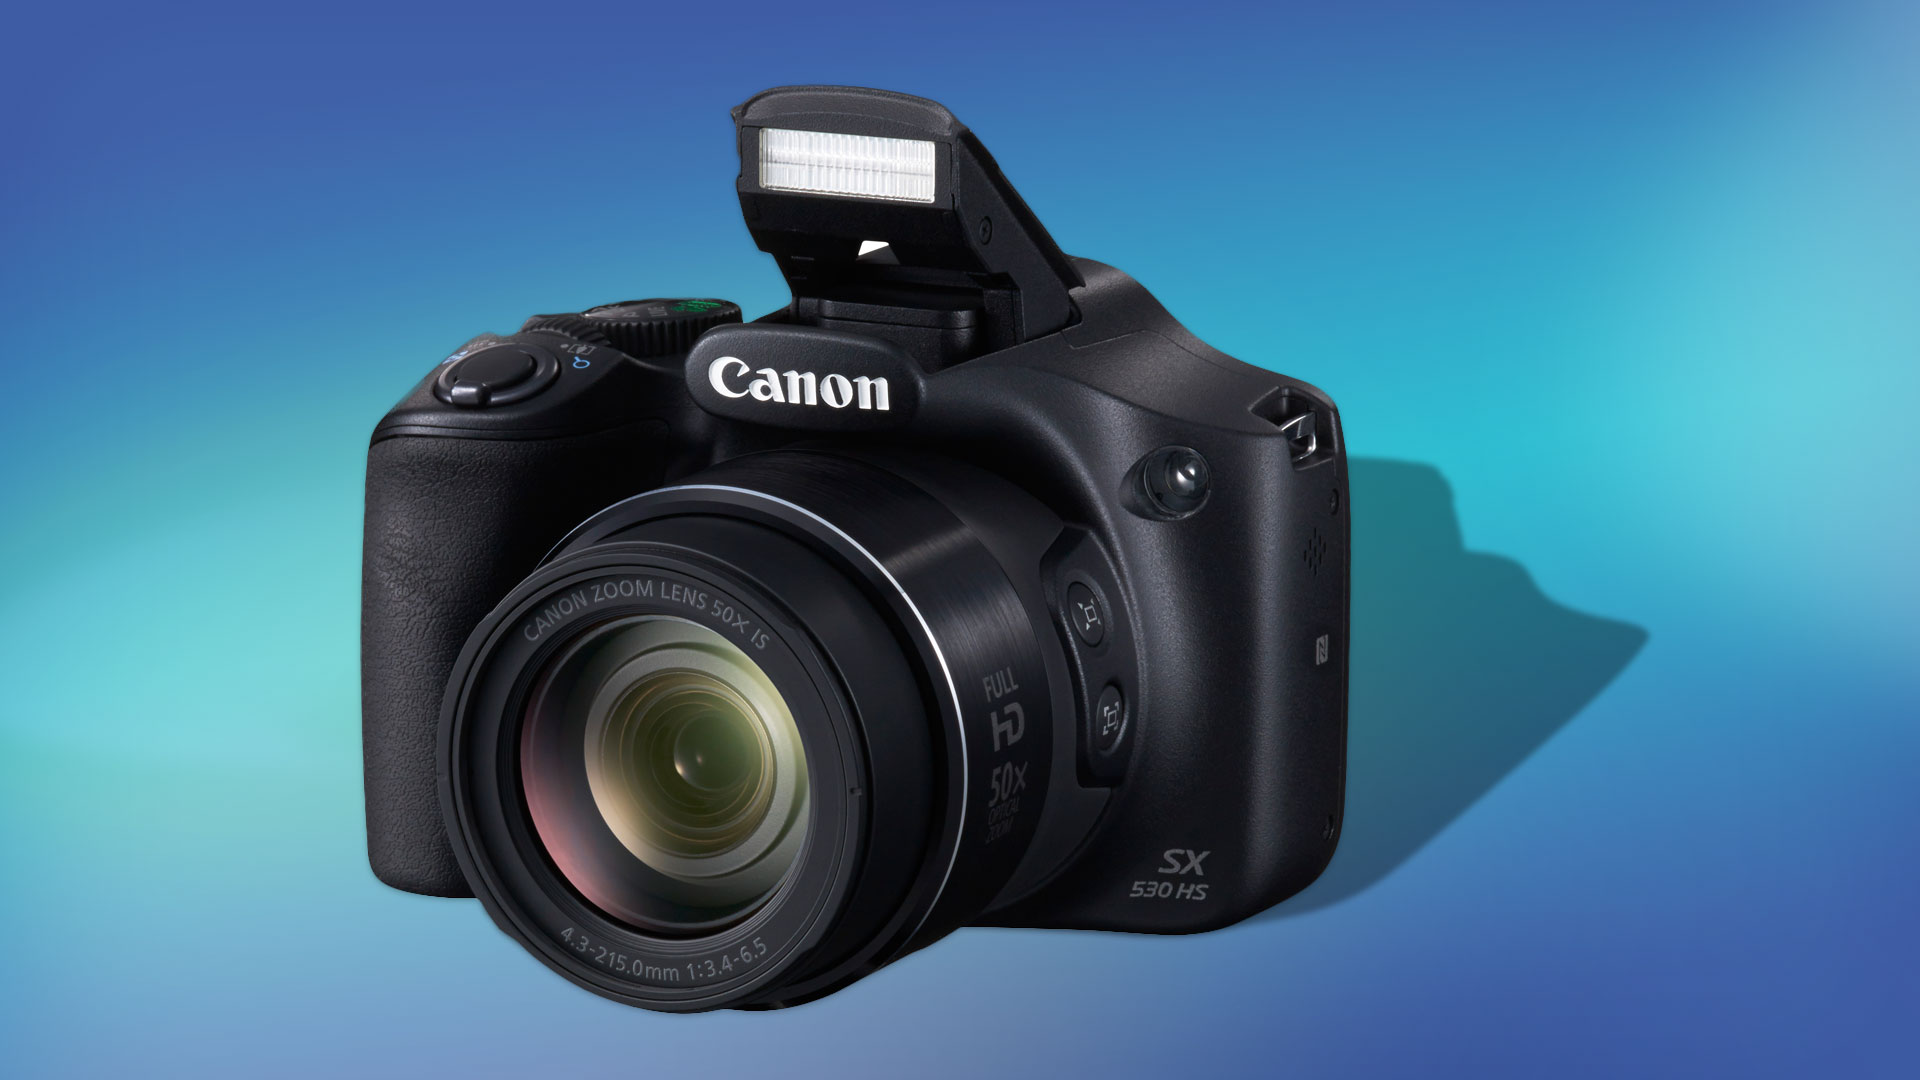 Canon Powershot SX530 HS Review - Verdict